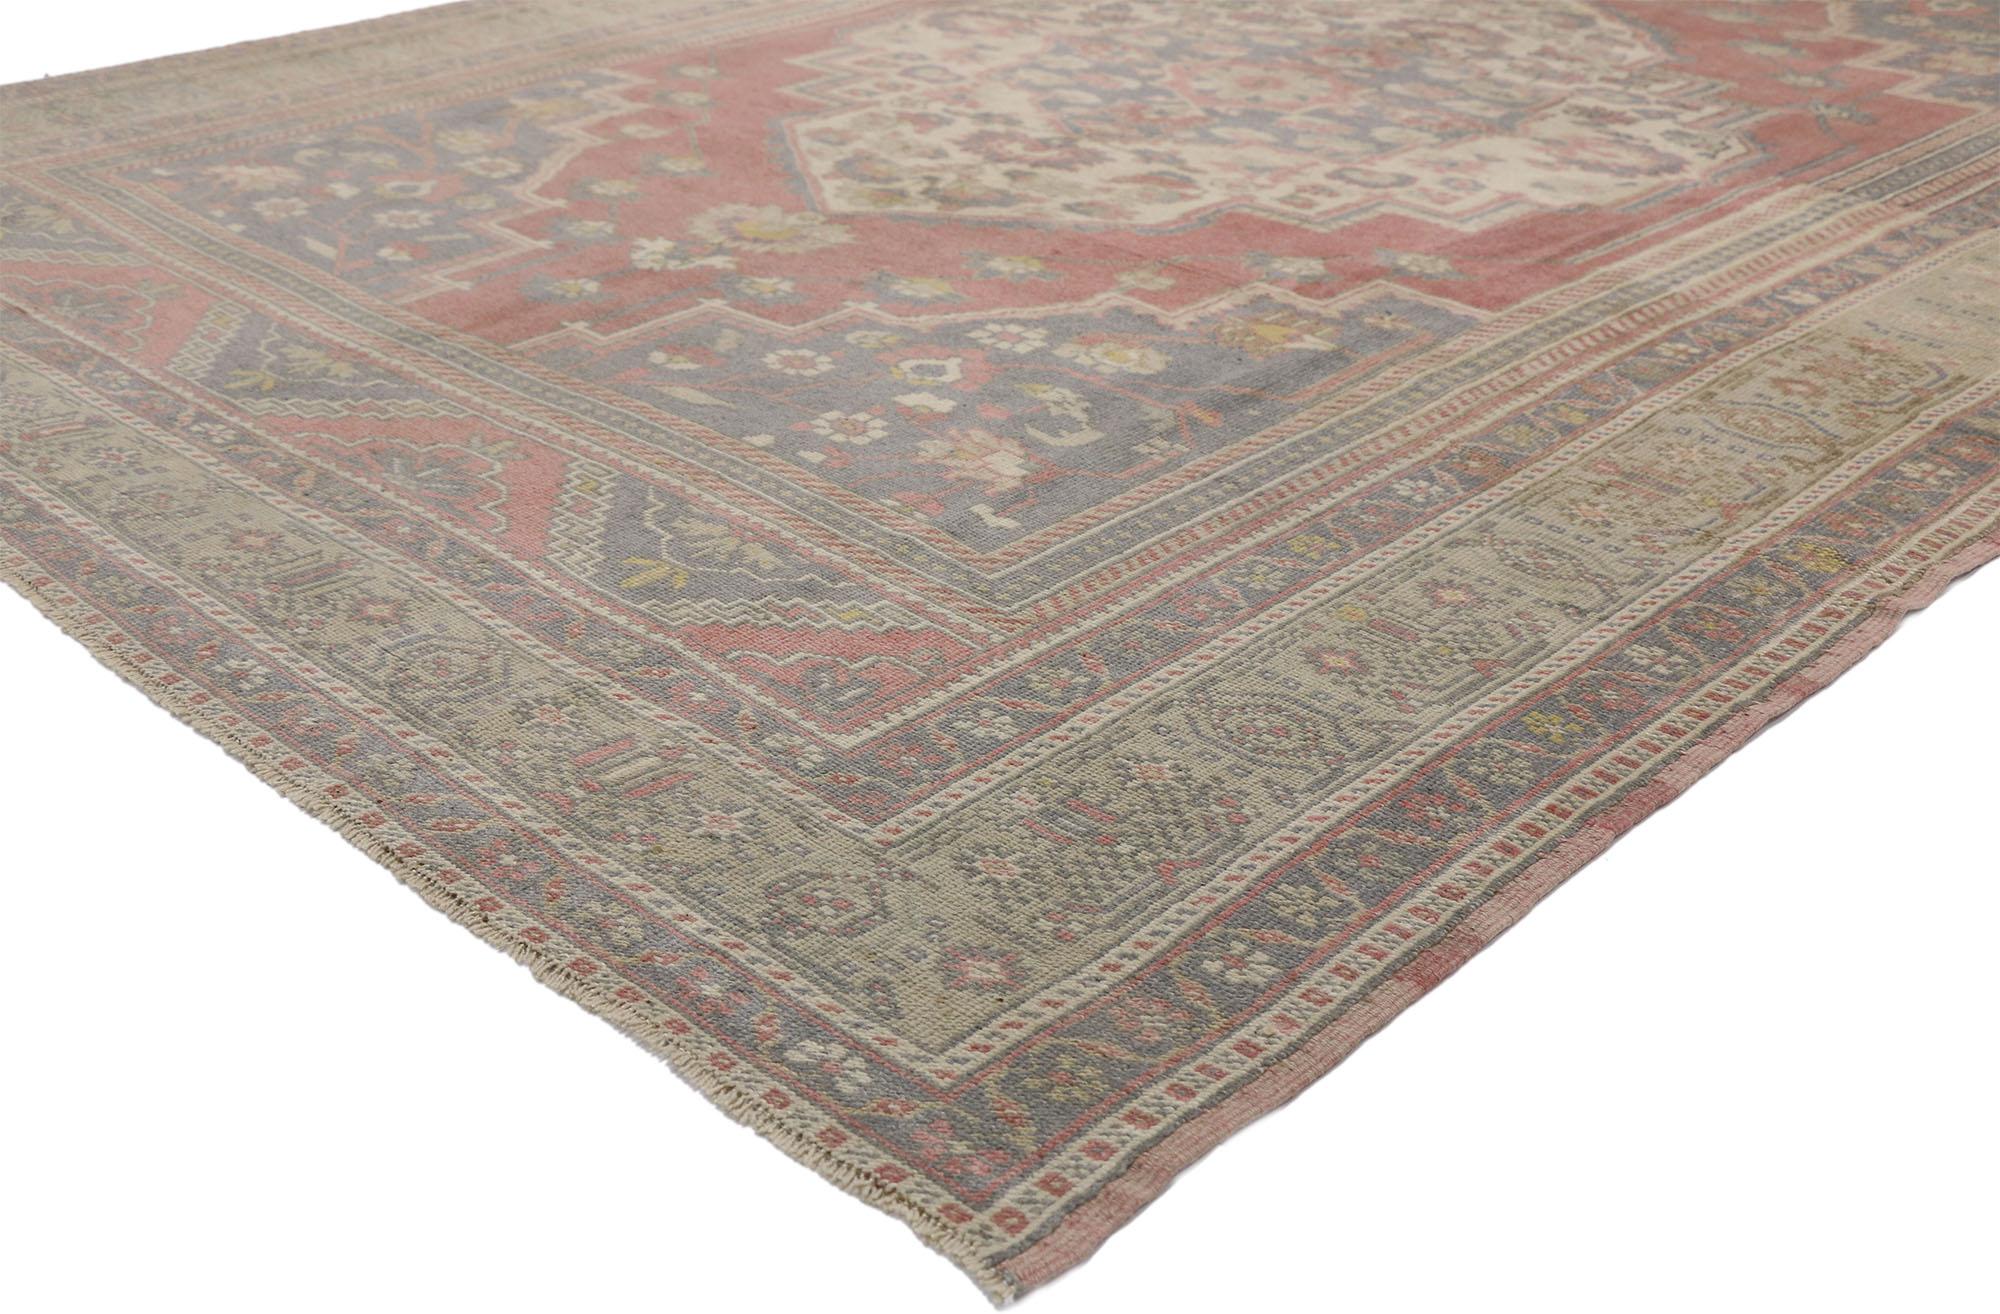 52436 Türkischer Oushak-Teppich im handwerklichen und amerikanischen Kolonialstil. Dieser handgeknüpfte türkische Oushak-Teppich aus Wolle zeigt ein traditionelles Blumenmedaillon auf einem verblassten Feld, umrahmt von blasslavendelfarbenen